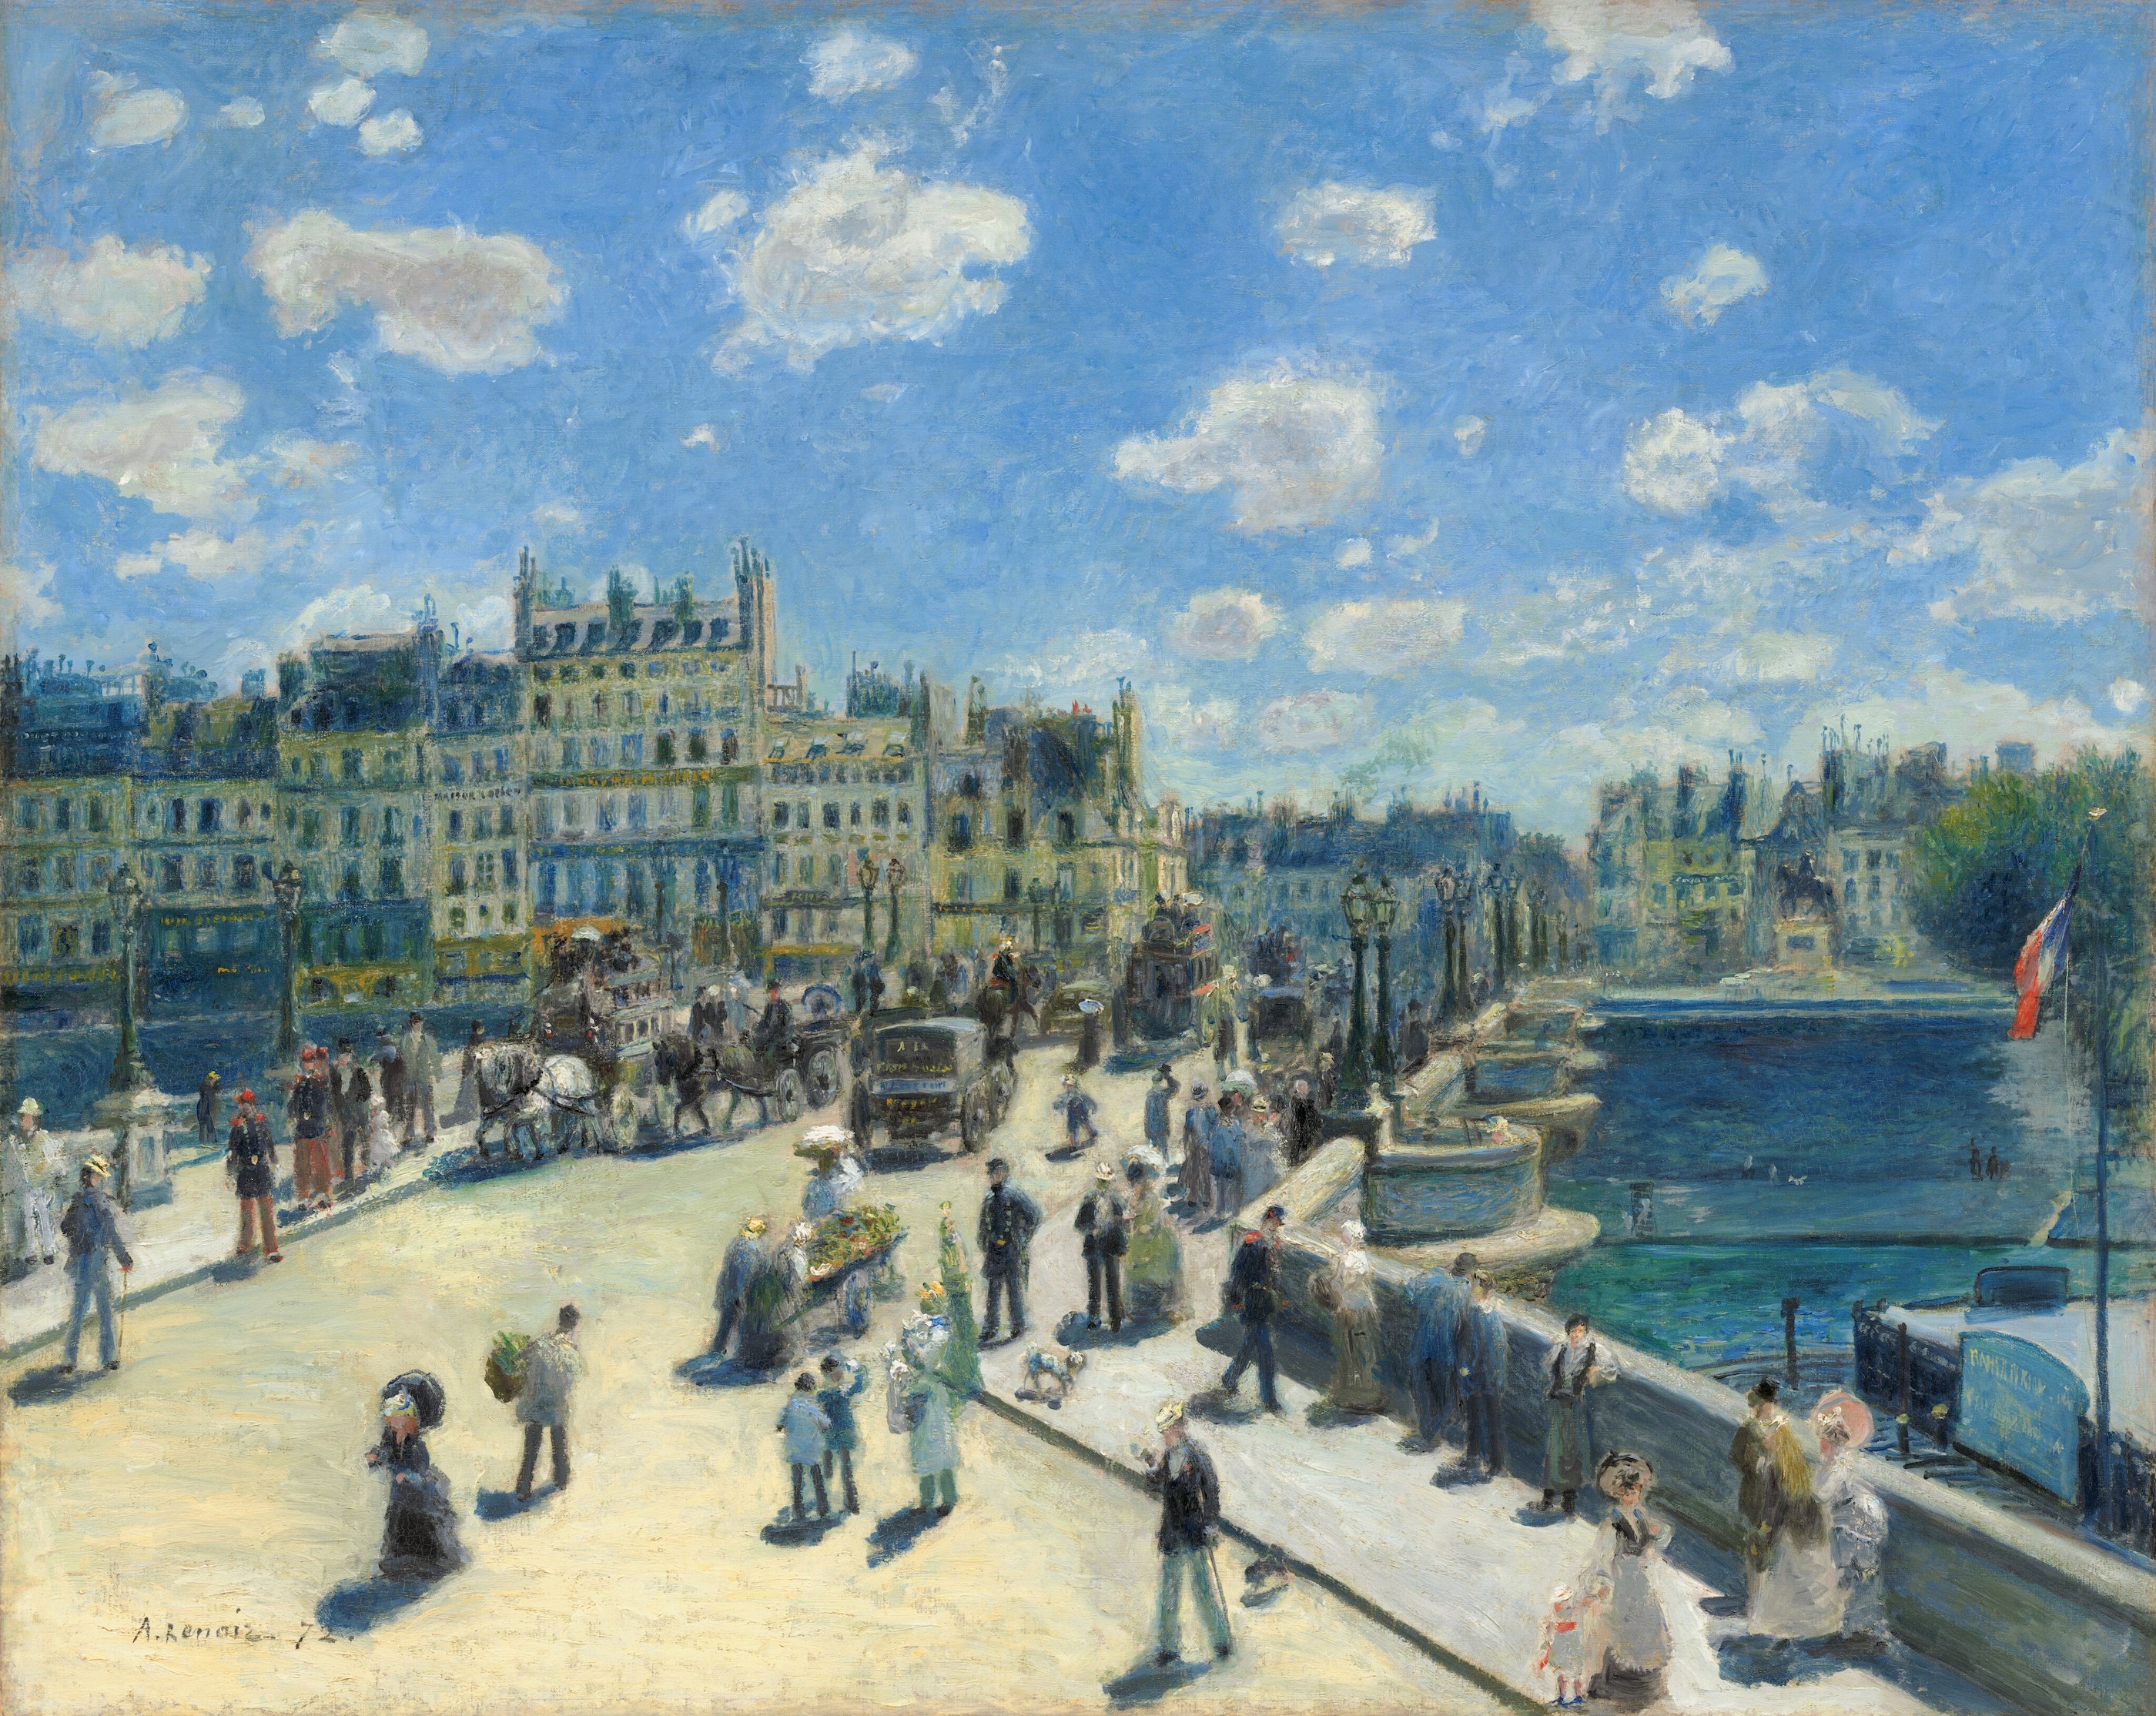 Le Pont Neuf, Paryż by Pierre-Auguste Renoir - 1872 - 75,3 x 93,7 cm 